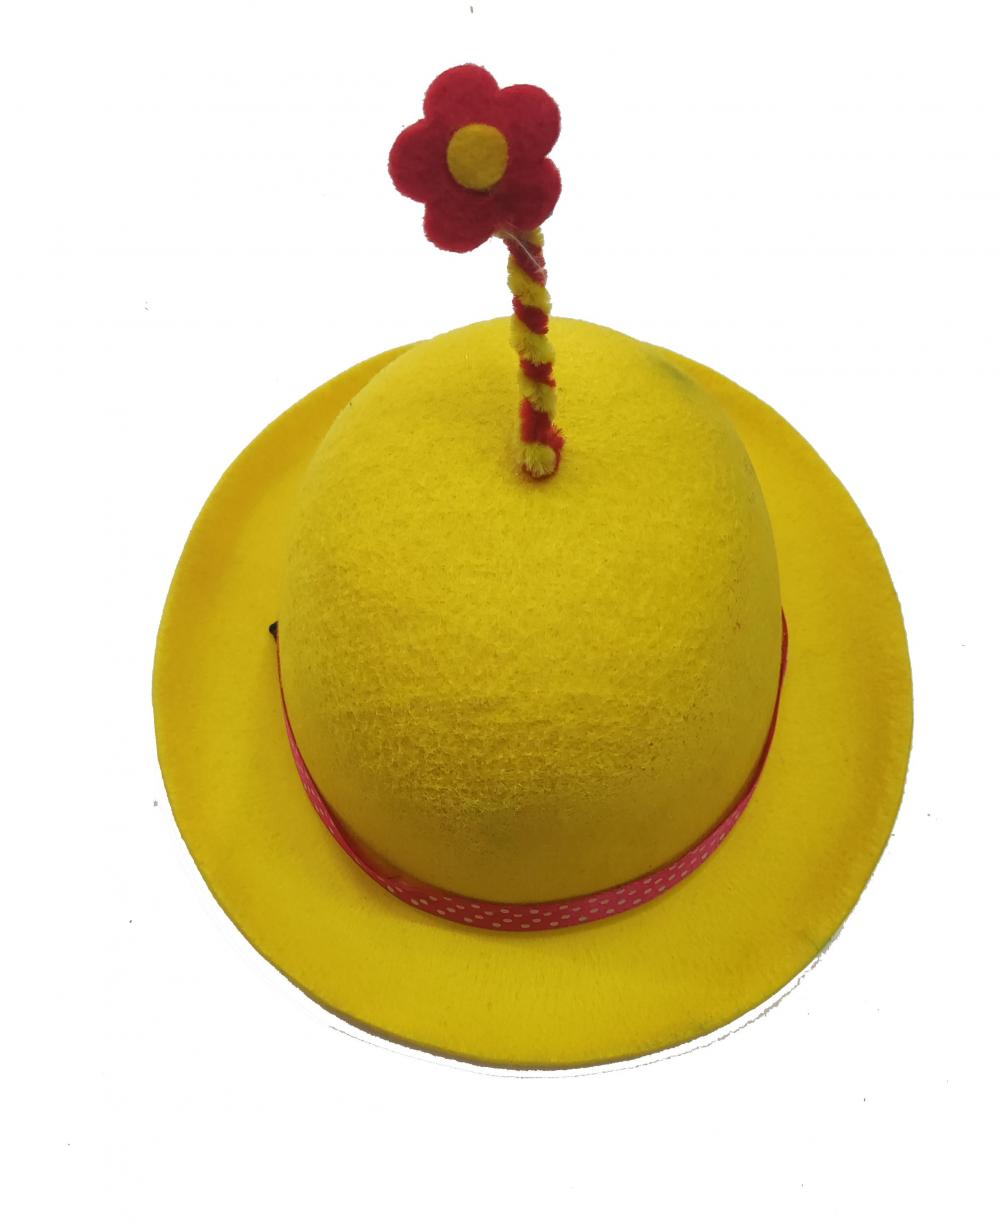 Chapéu amarelo fofo com pequena flor